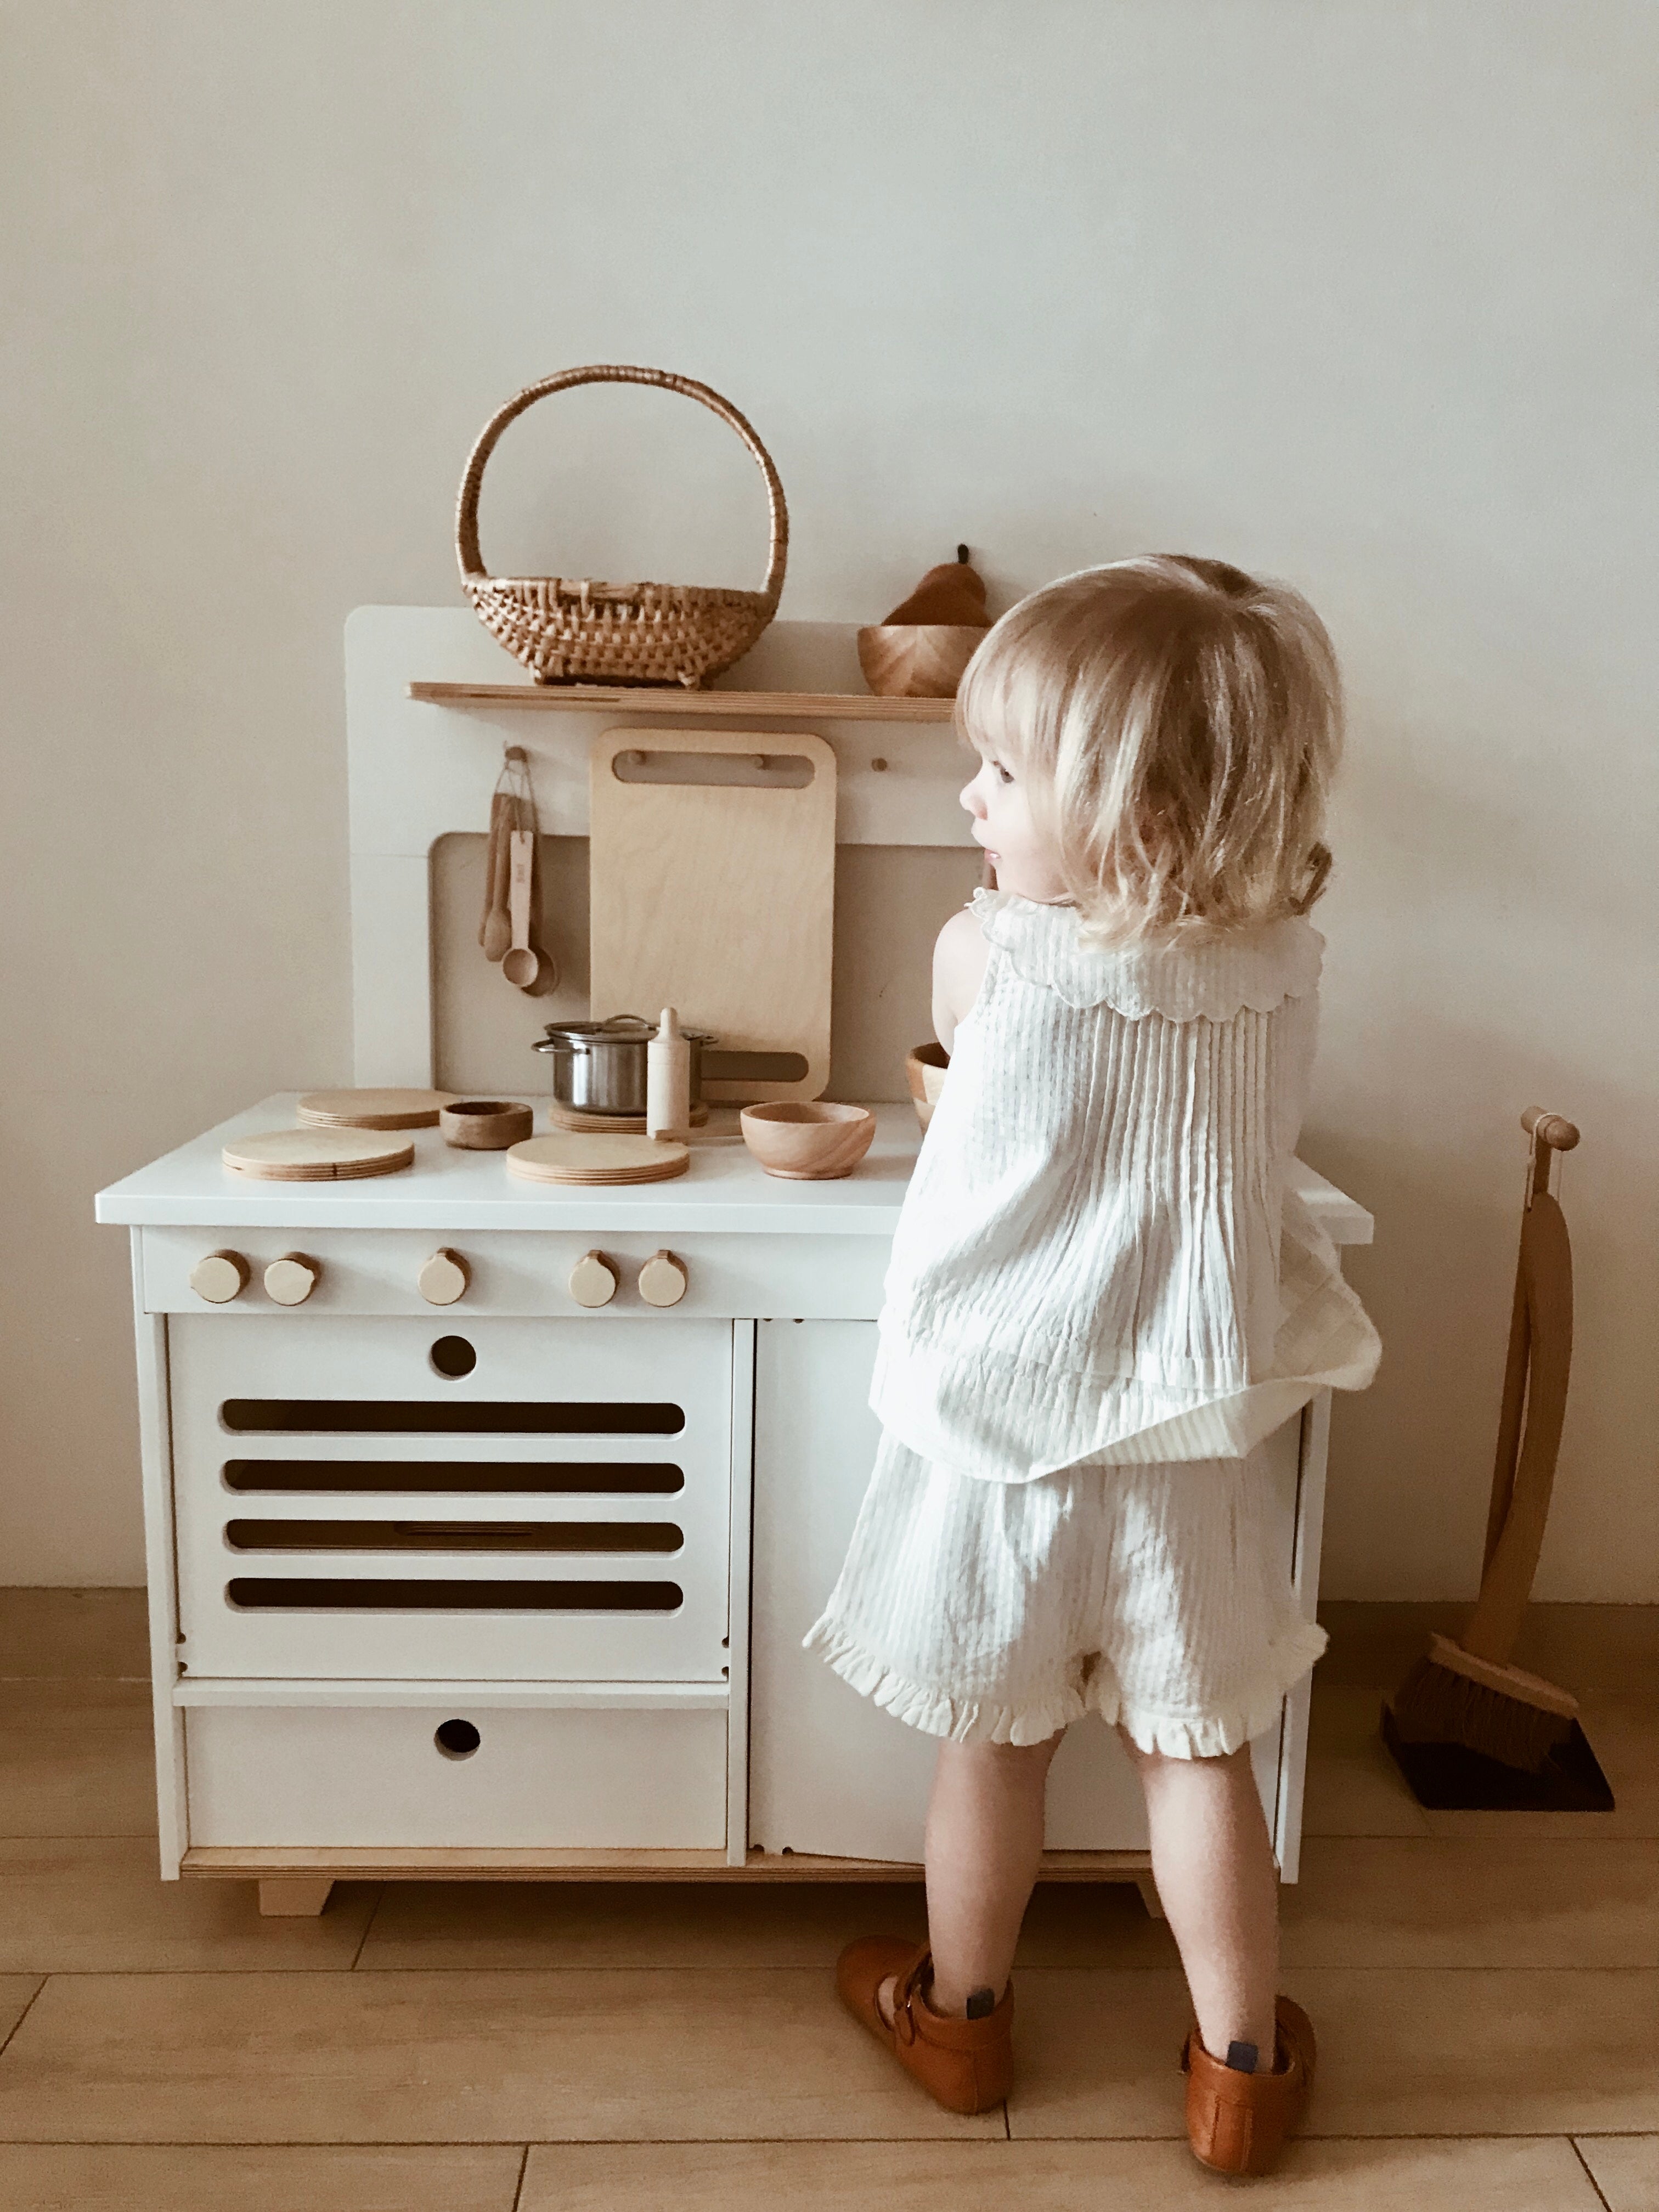 Midmini Kinderspielküche aus Holz - Spielend kochen wie die Großen